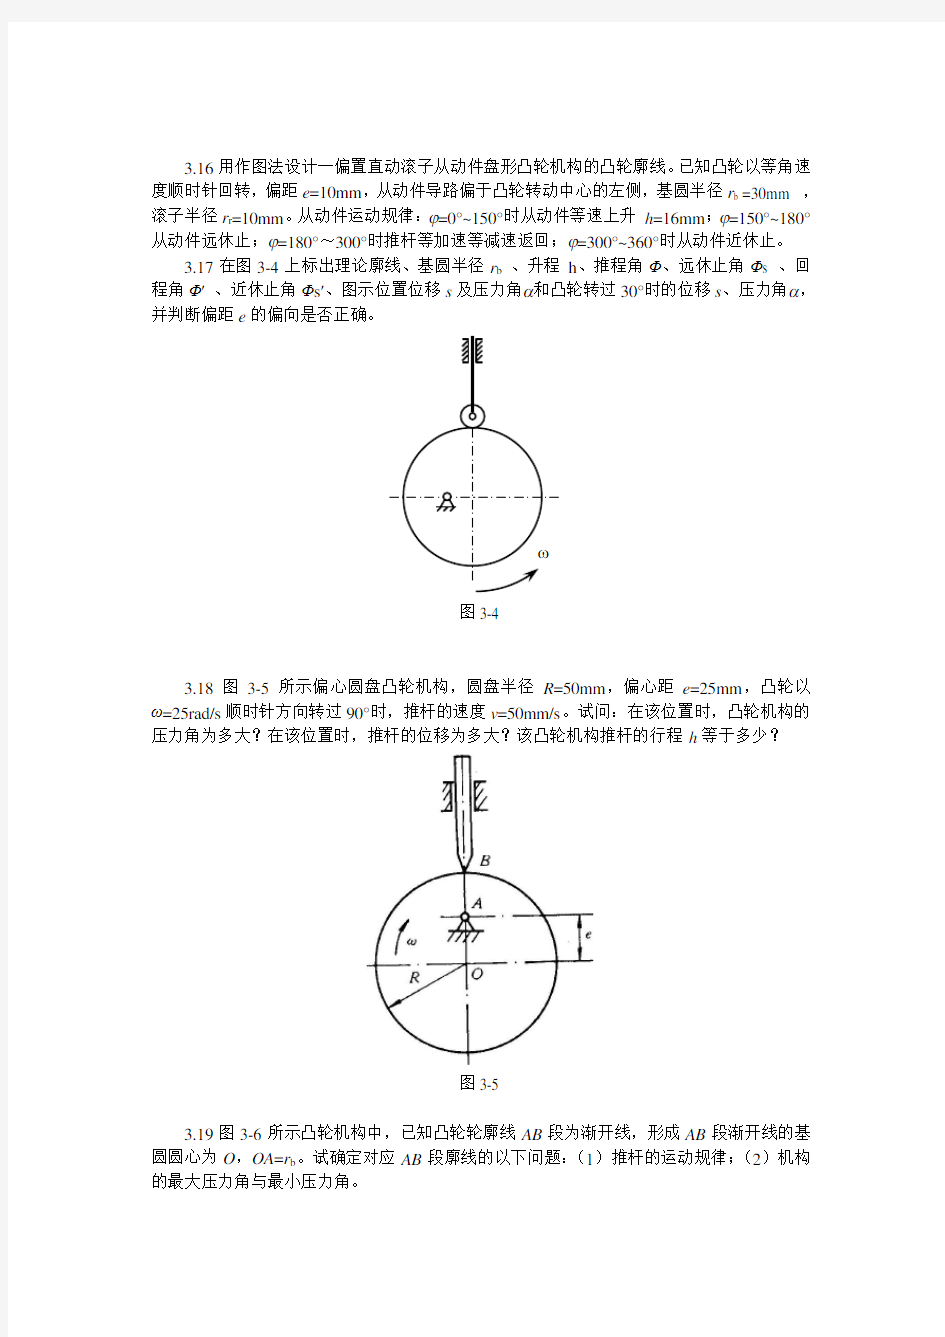 重庆大学机械原理习题集-3凸轮机构